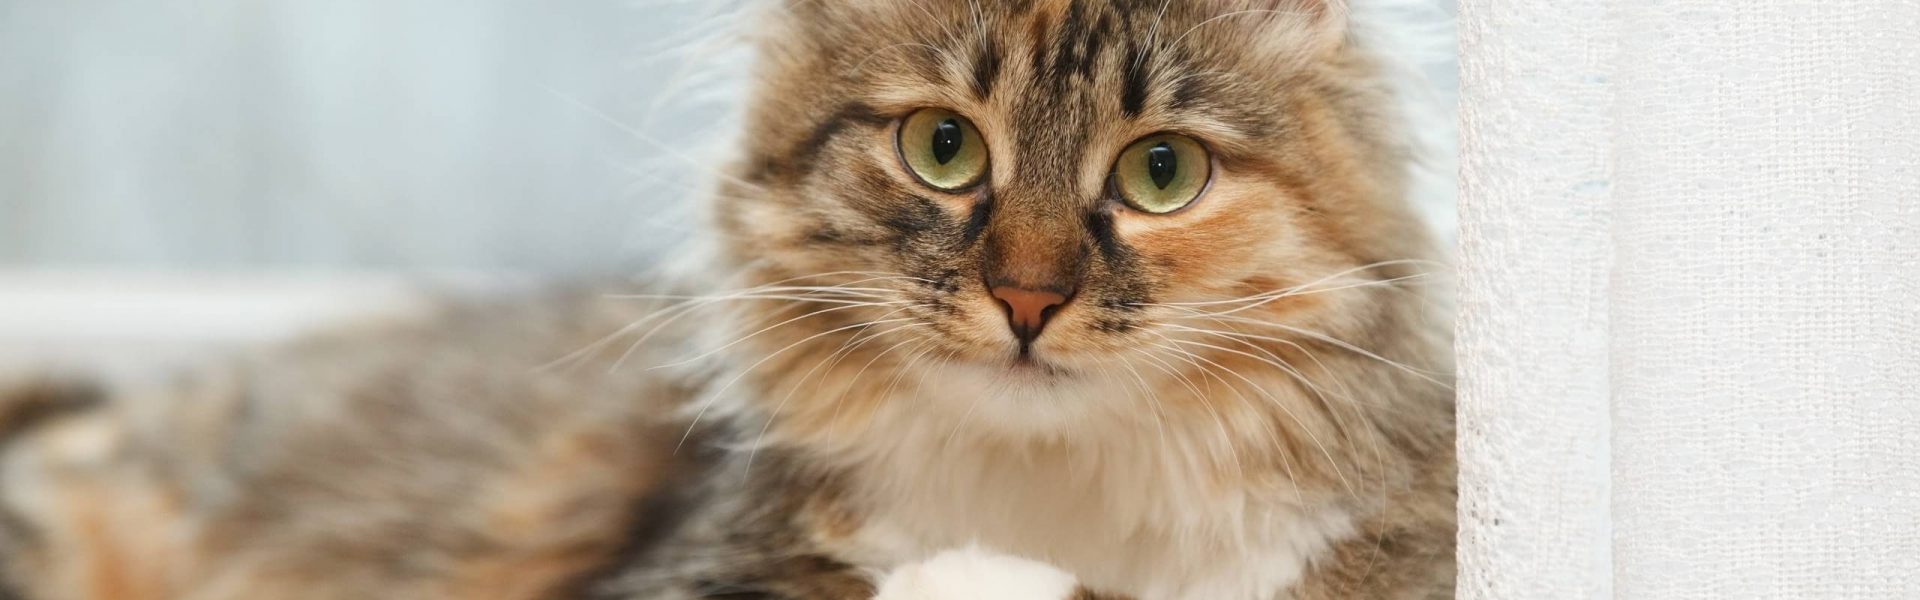 Les 11 Conseils De Cat S Best Pour Entretenir Le Pelage De Votre Chat A Poil Long Cat S Best